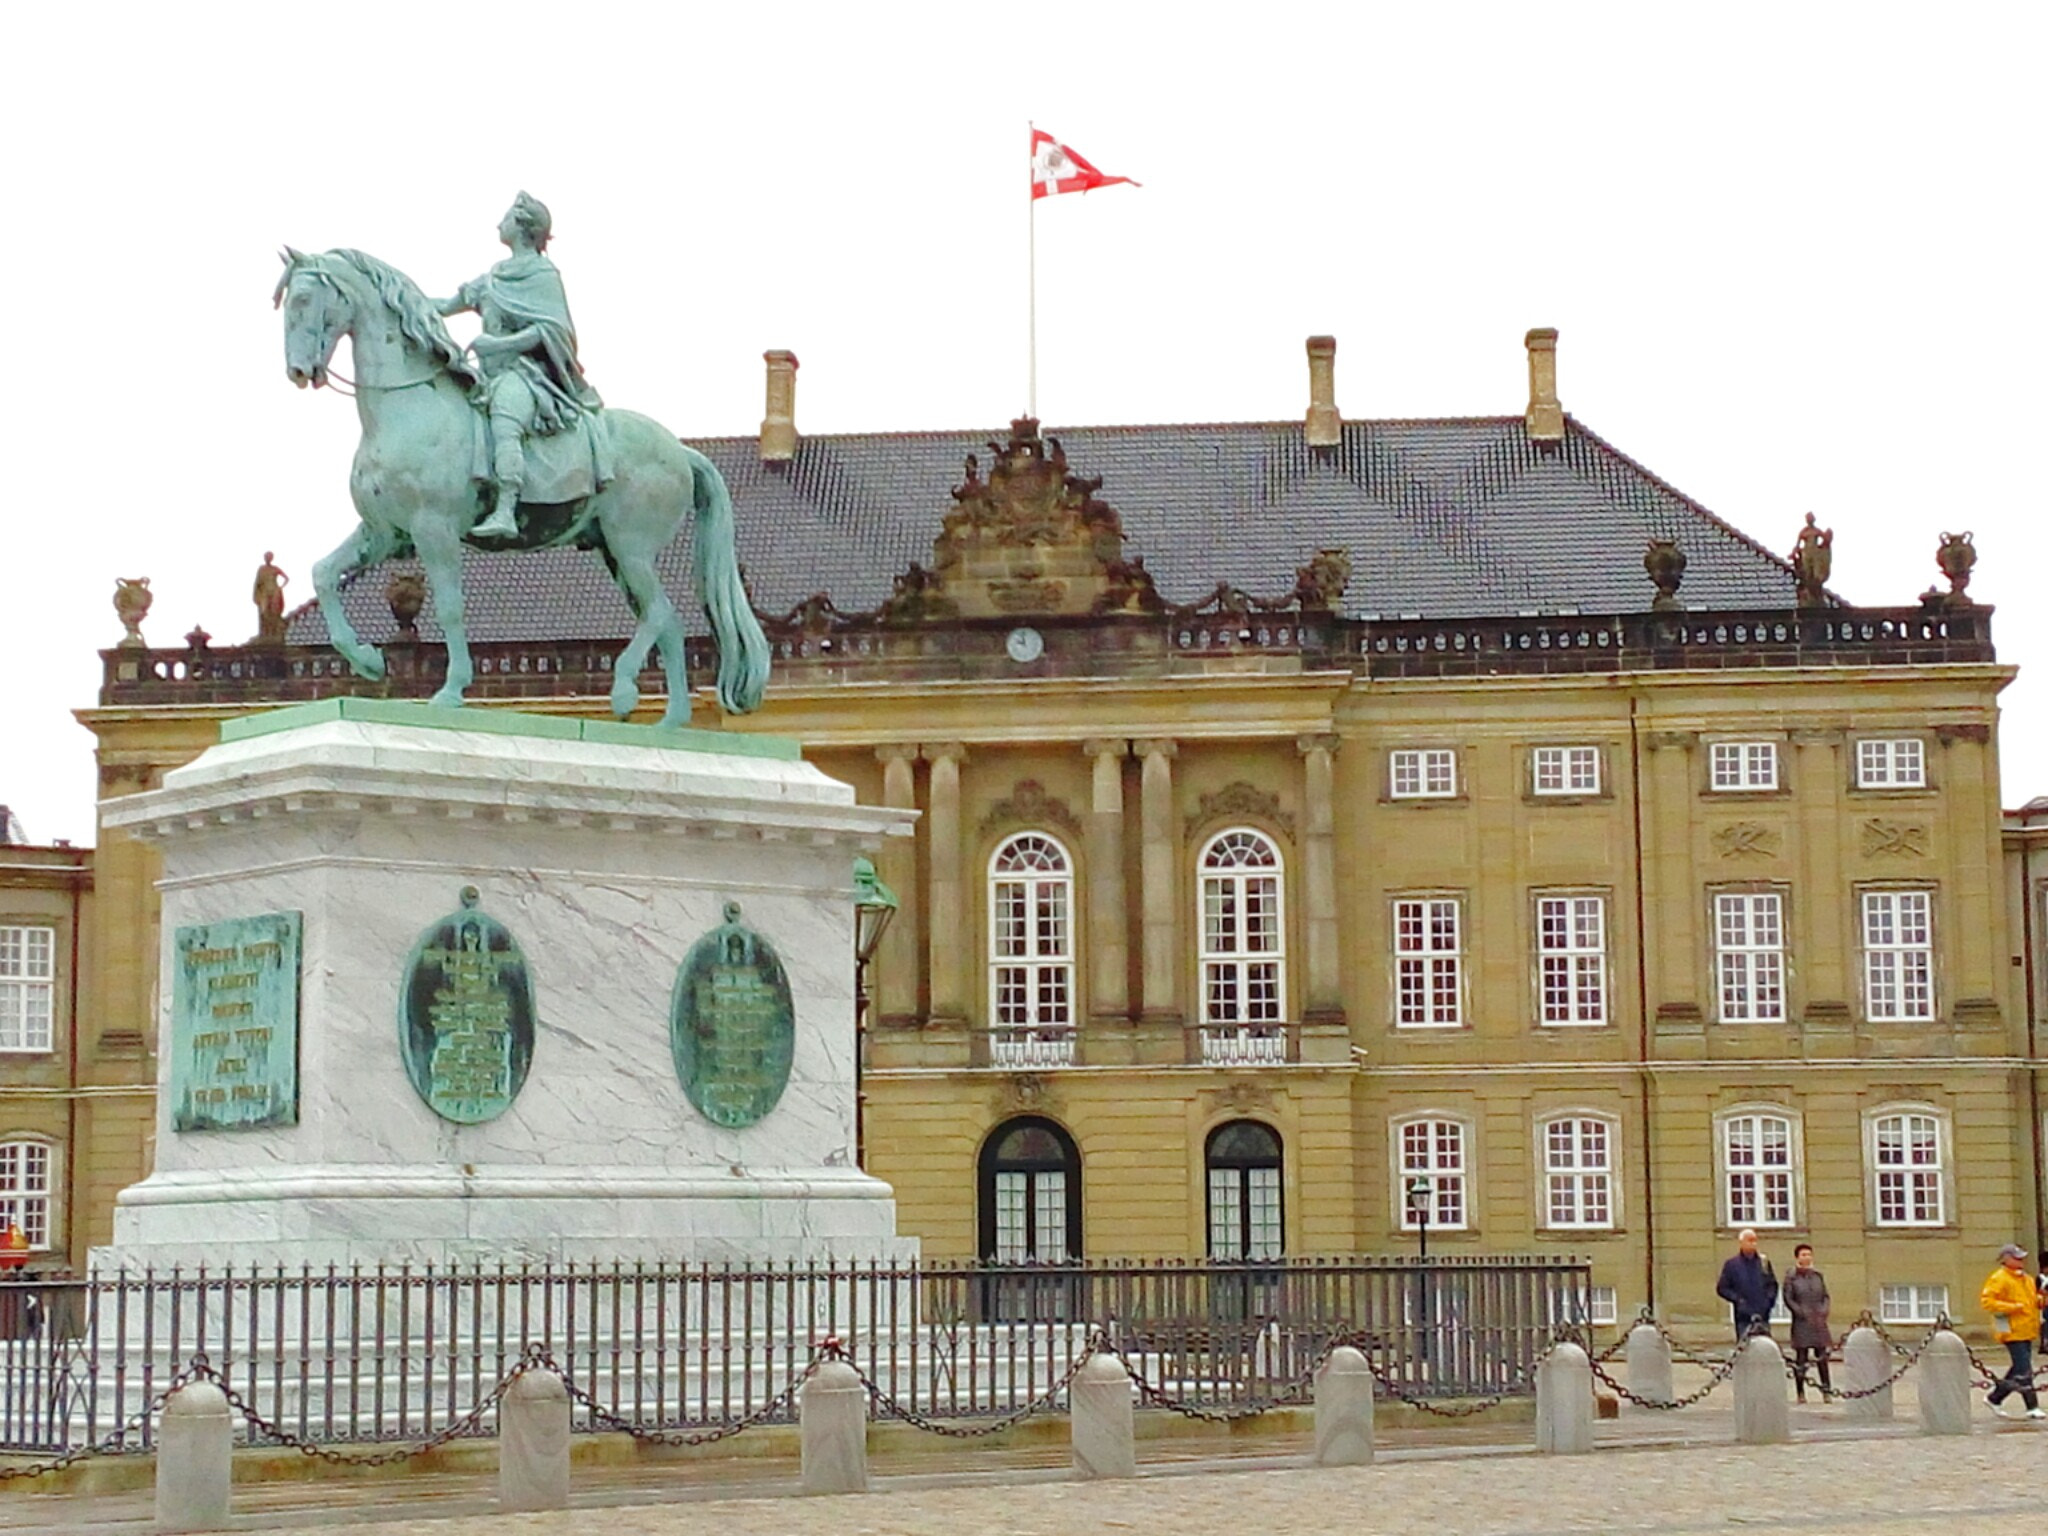 LG G Vista sample photo. Amalienborg palace. copenhagen photography